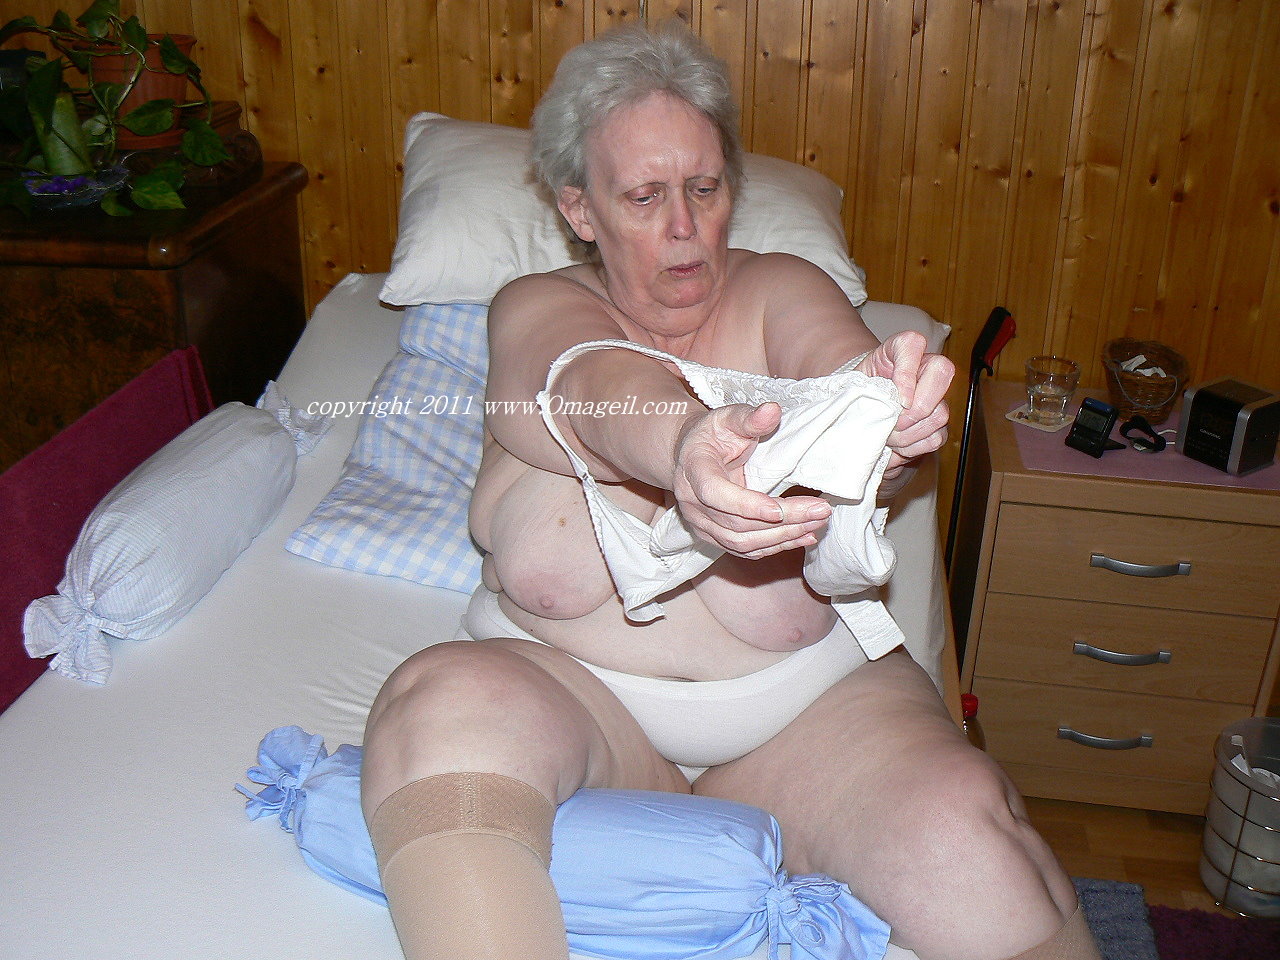 OmaGeiL Senior Pervert Horny Photos Collection - Telegraph